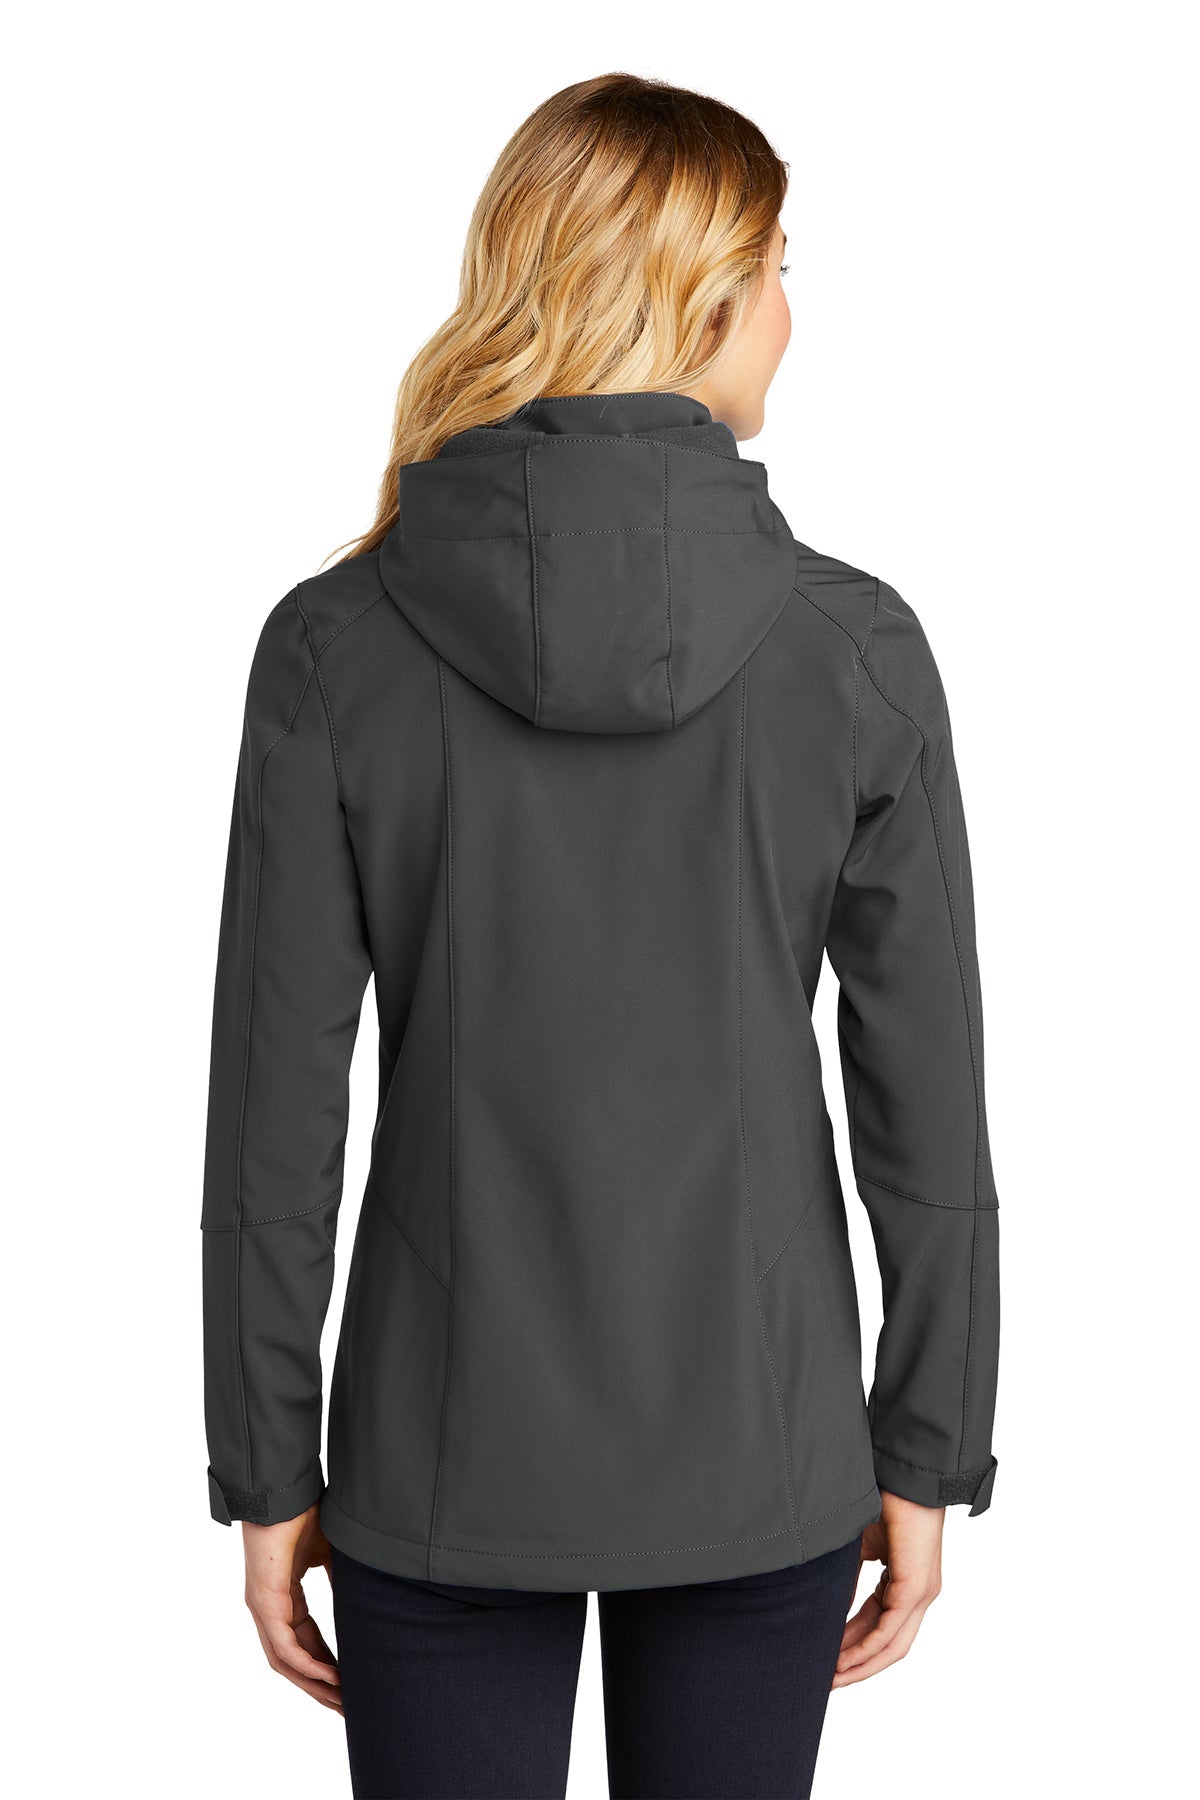 Modern Hire: Eddie Bauer® Ladies Trail Soft Shell Jacket